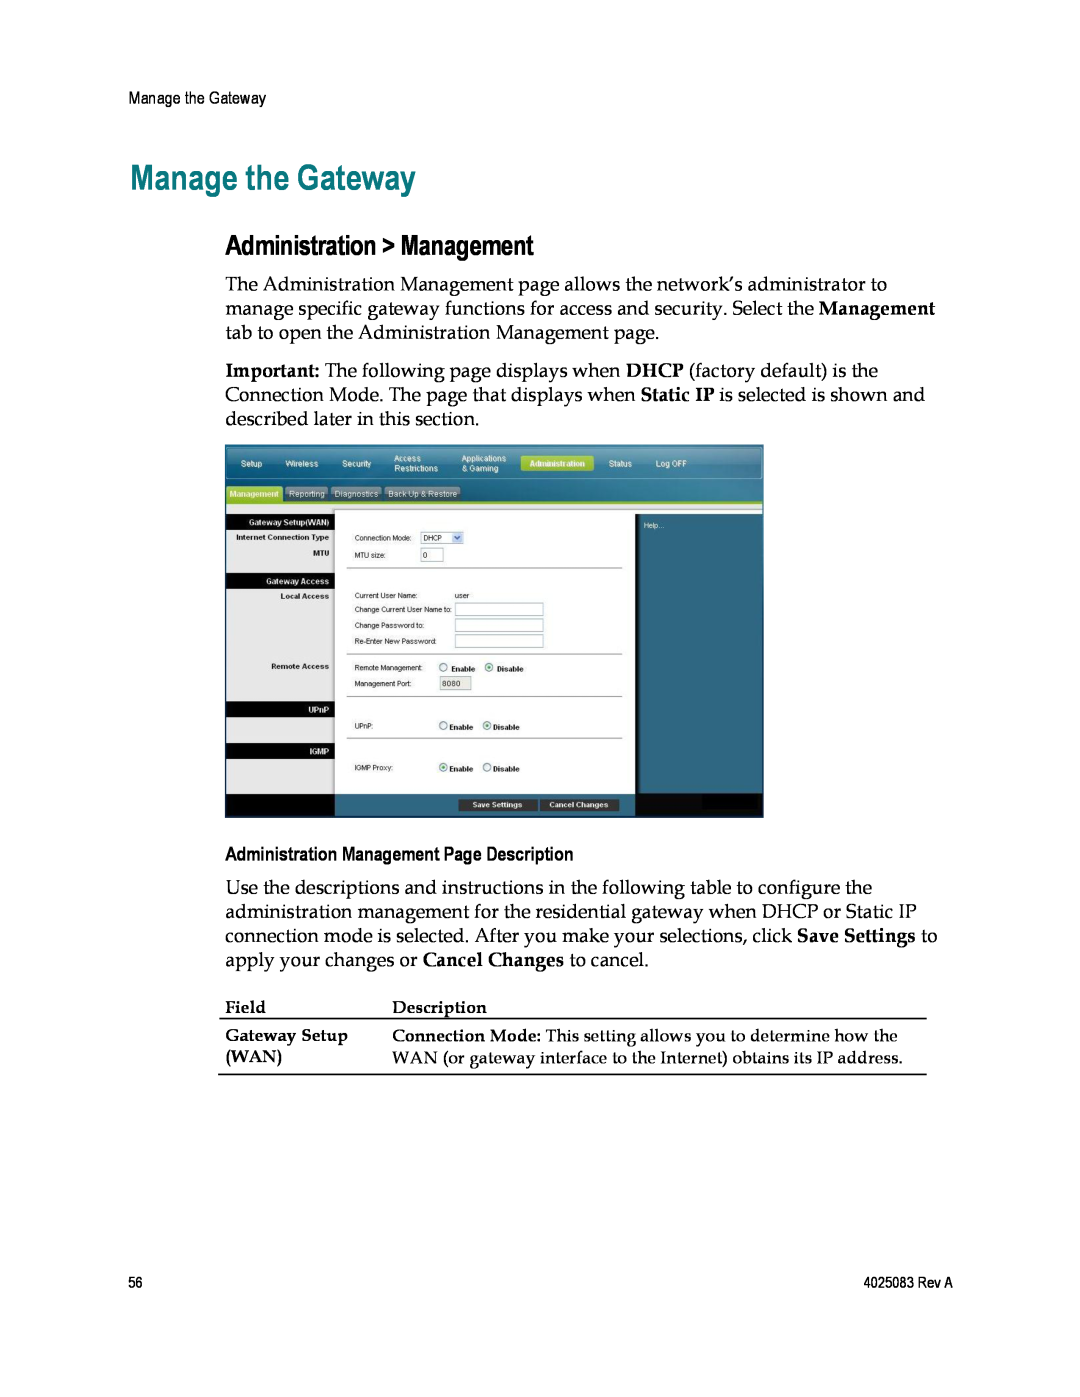 Cisco Systems 4039760, EPC3827, DPC3827 Manage the Gateway, Administration Management Page Description 